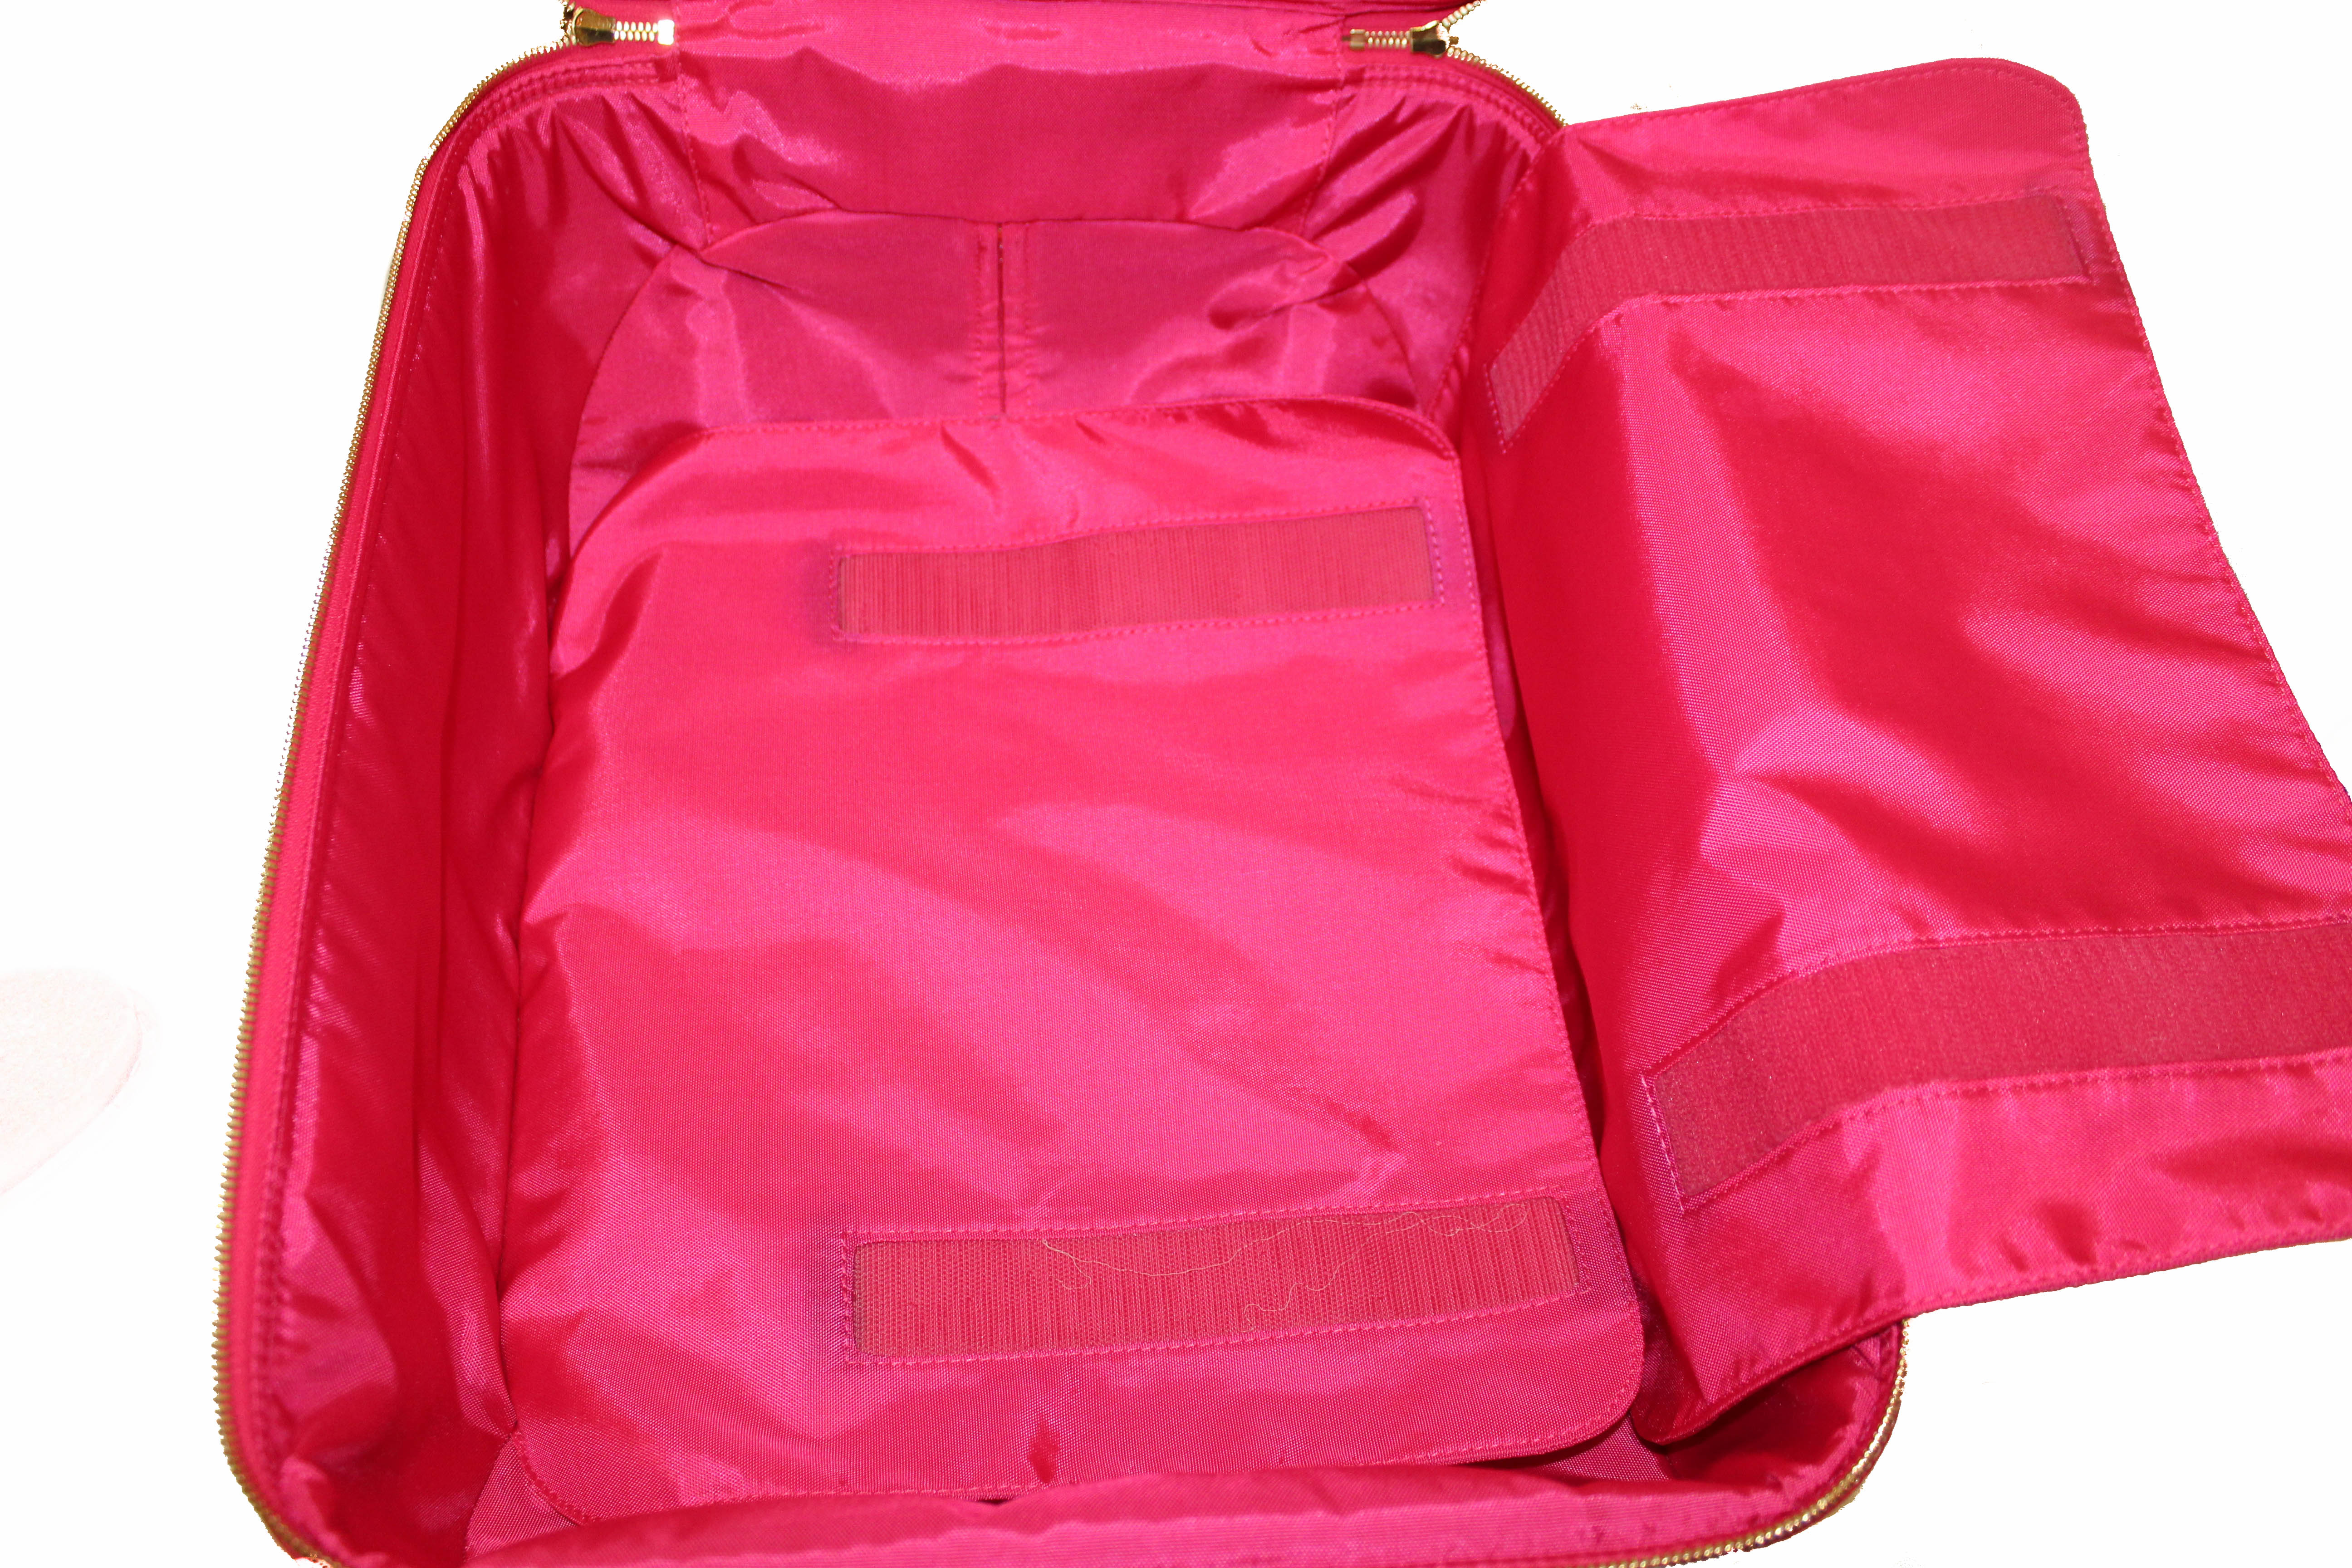 Authentic Louis Vuitton Pink Monogram Vernis Leather Pegase 45 Luggage –  Paris Station Shop